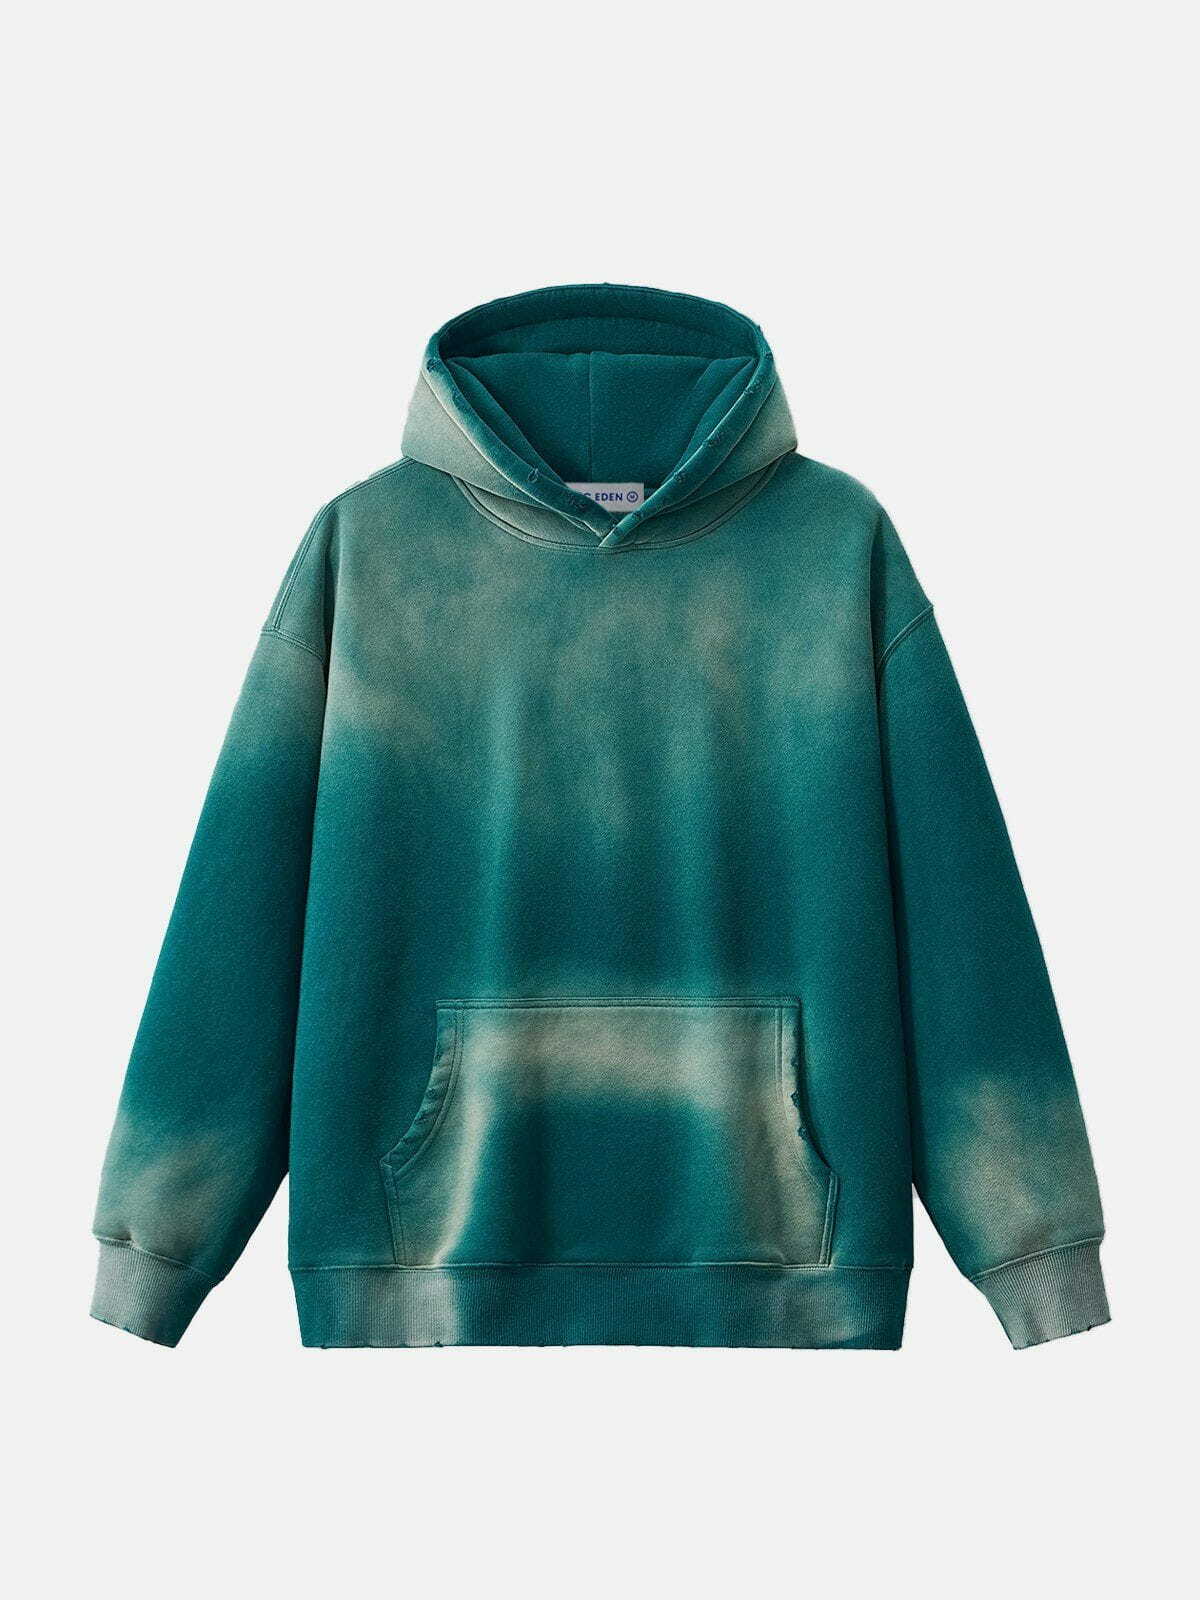 gradient washed hoodie urban streetwear essential 2836